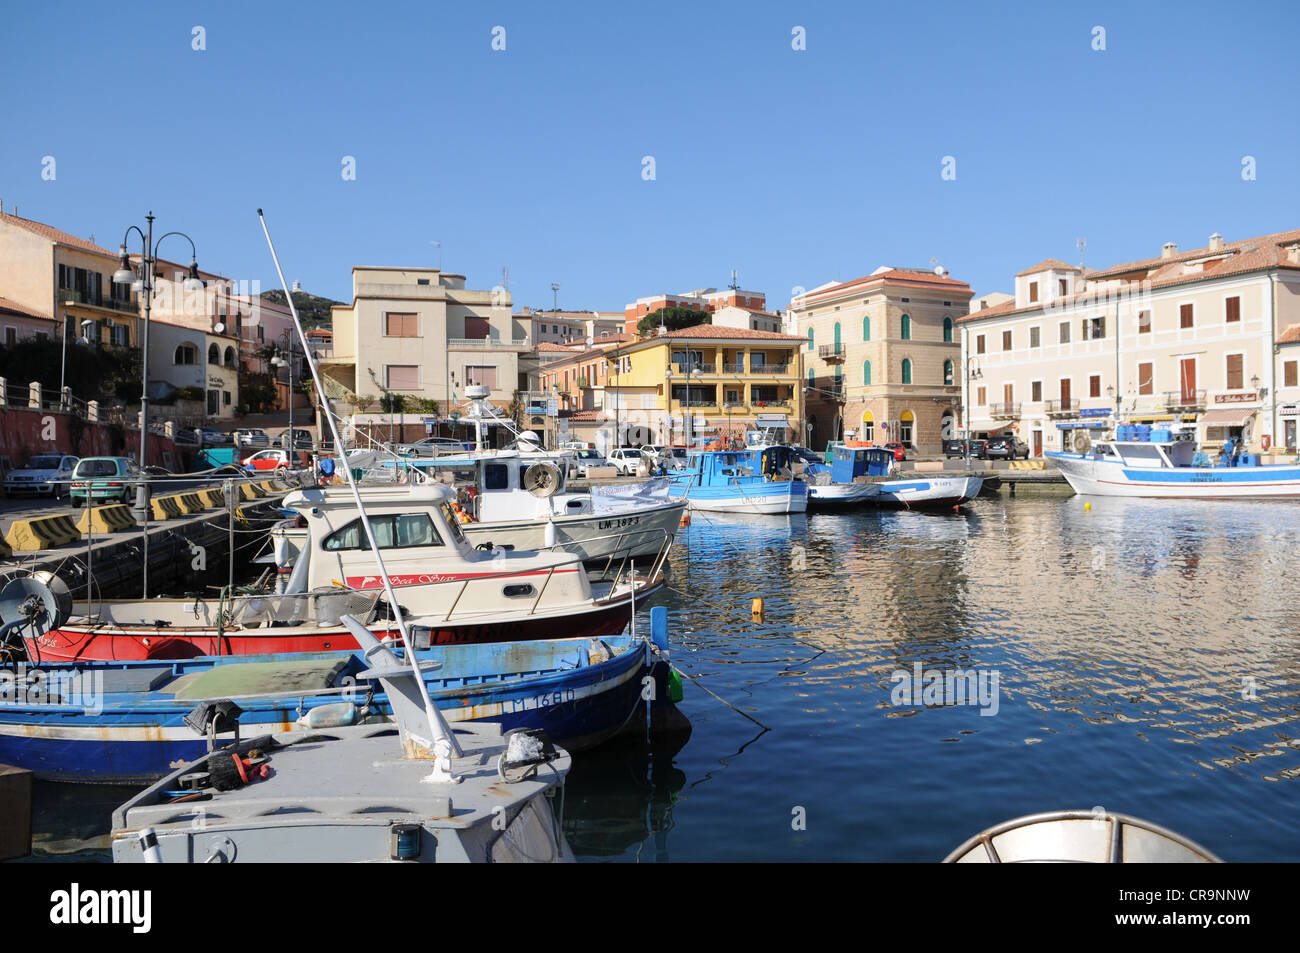 The harbour of the La Maddalena island, Sardinia, Italy Stock Photo